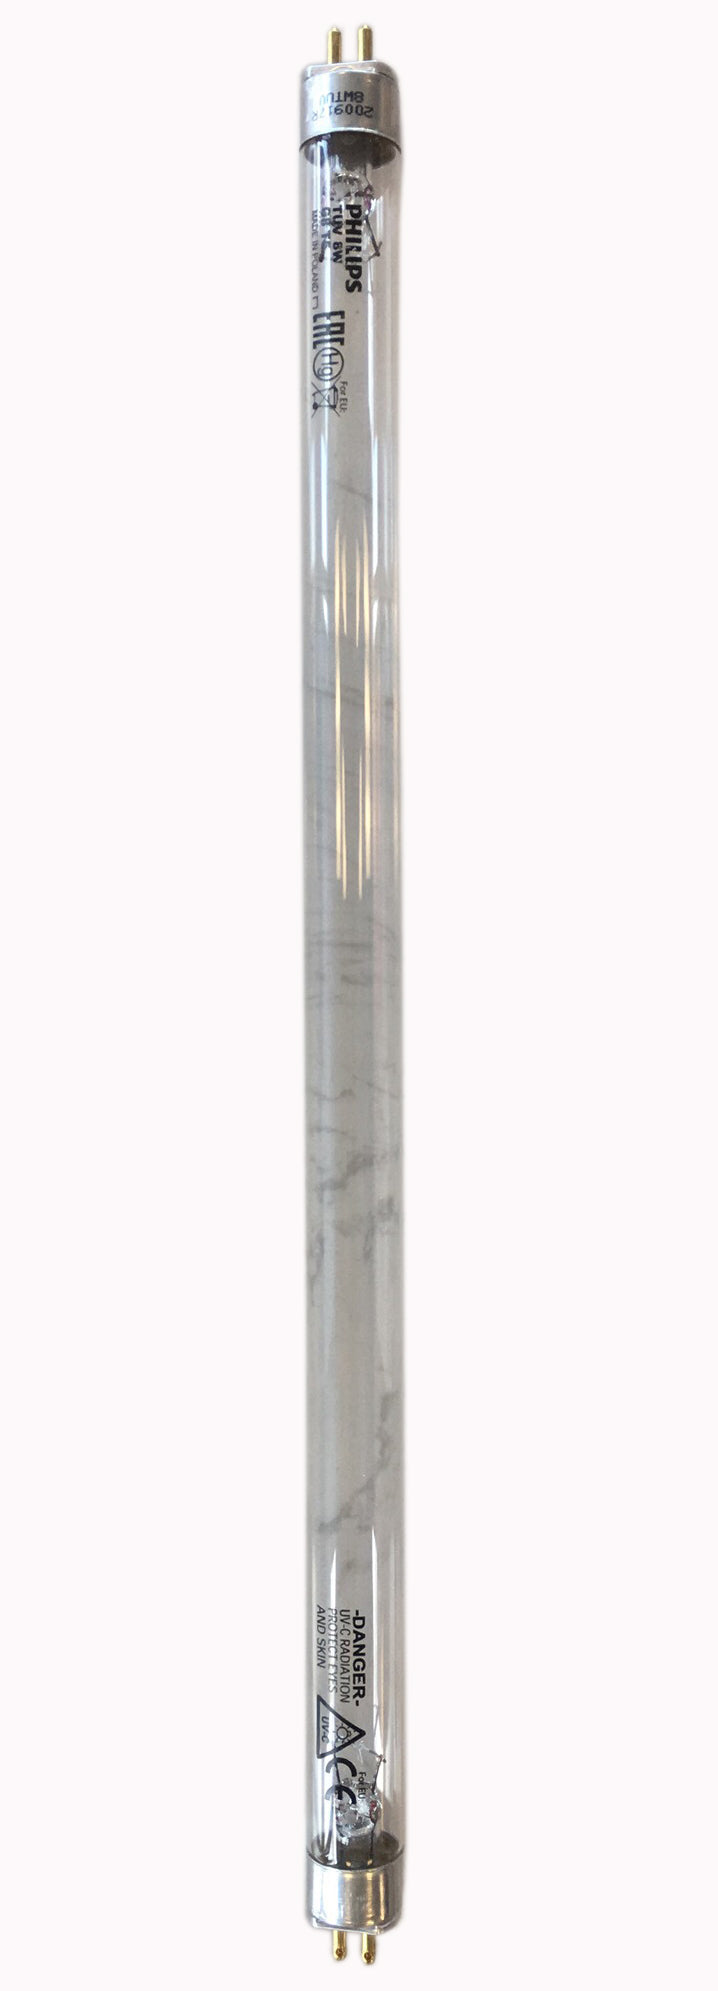 K209 Bulb